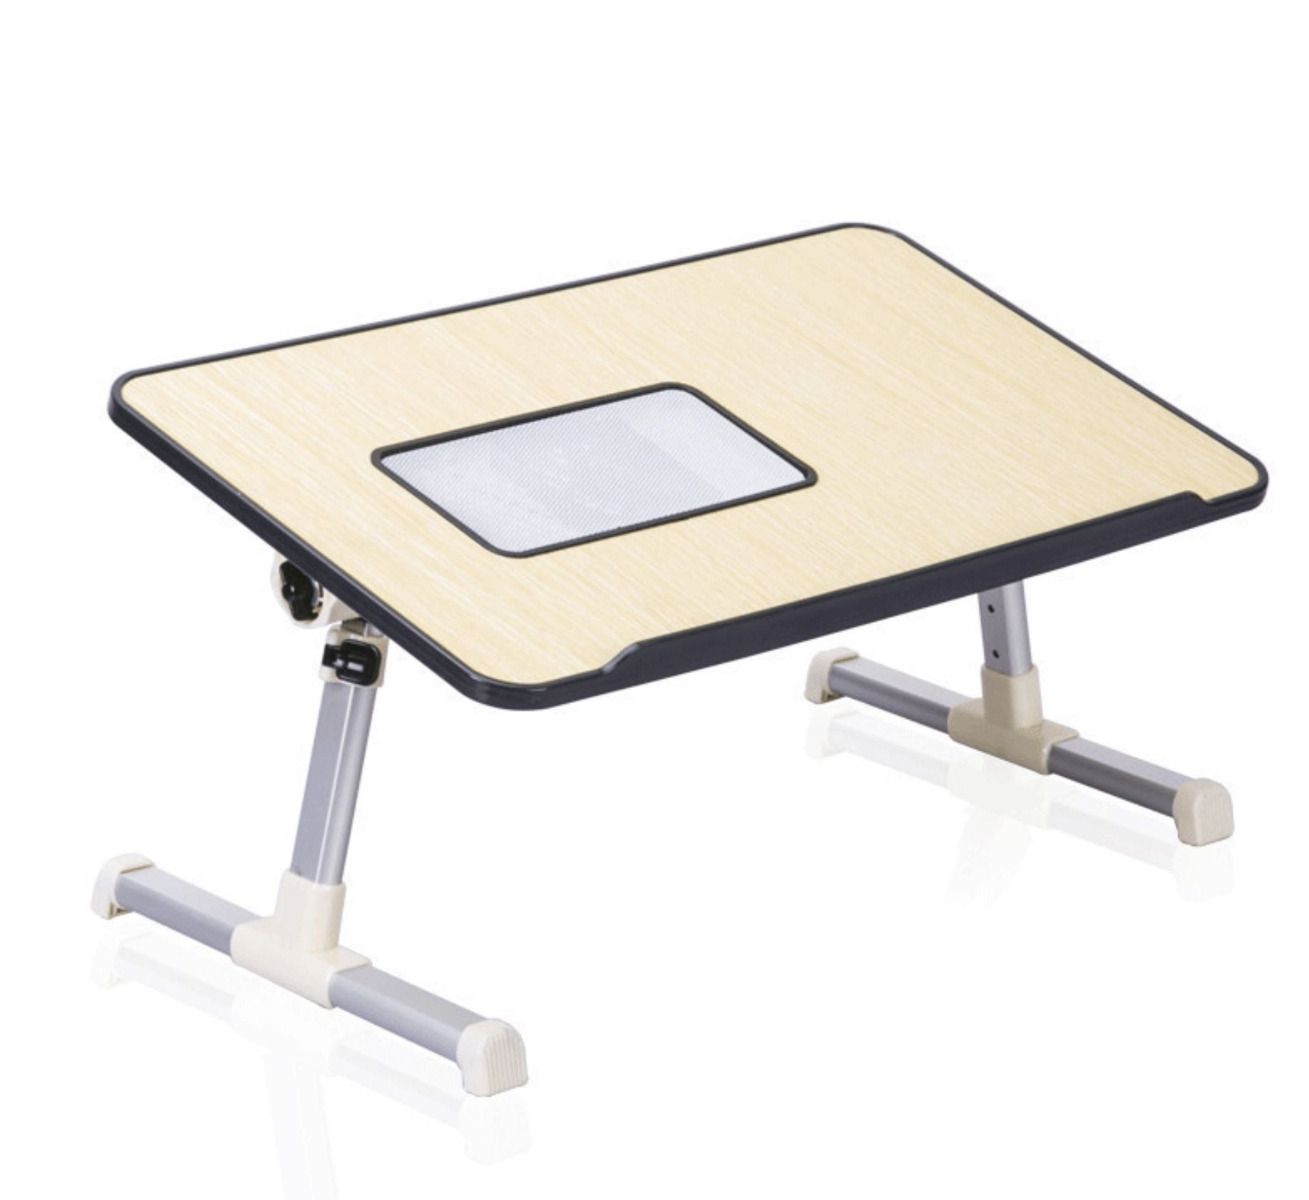 طاولة قابلة للتعديل للدراسة والعمل لأجهزة اللابتوب-1112